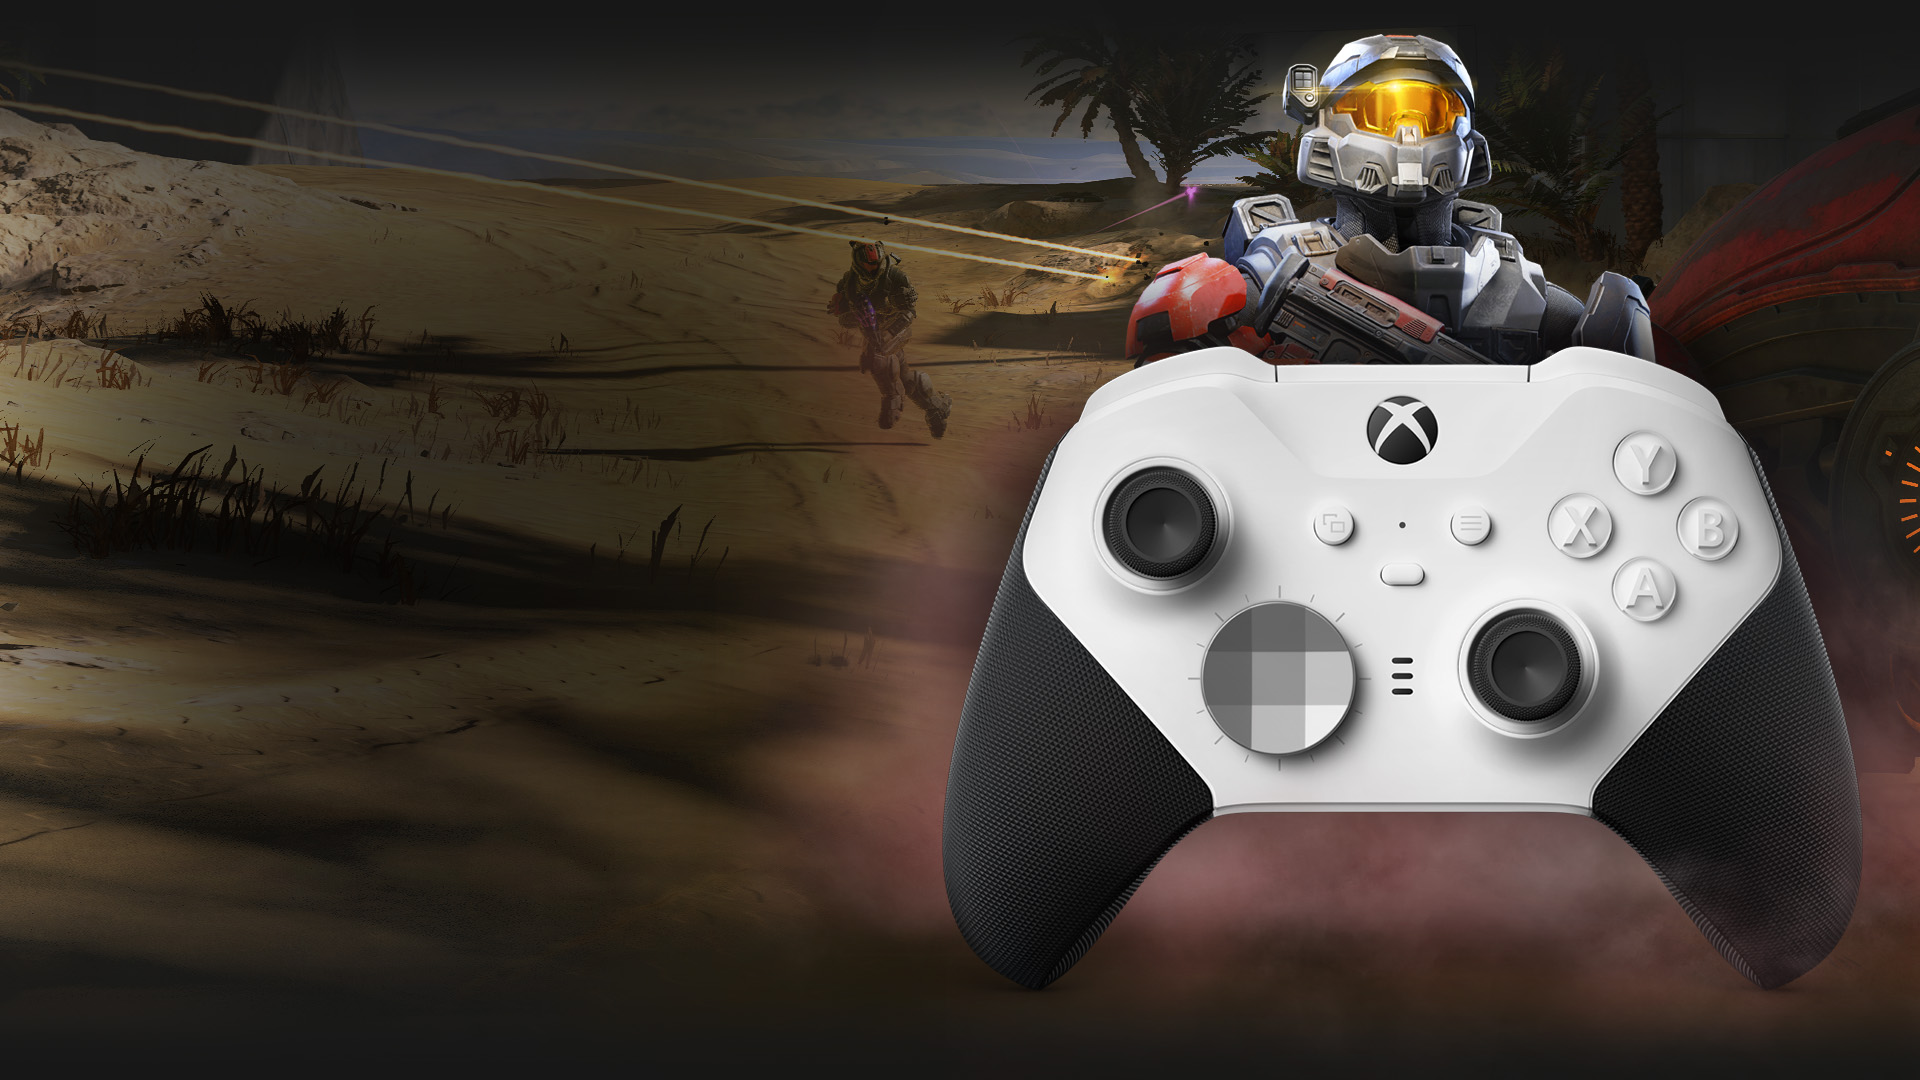 Xbox Elite ワイヤレス コントローラー シリーズ 2 Core (ホワイト) | Xbox